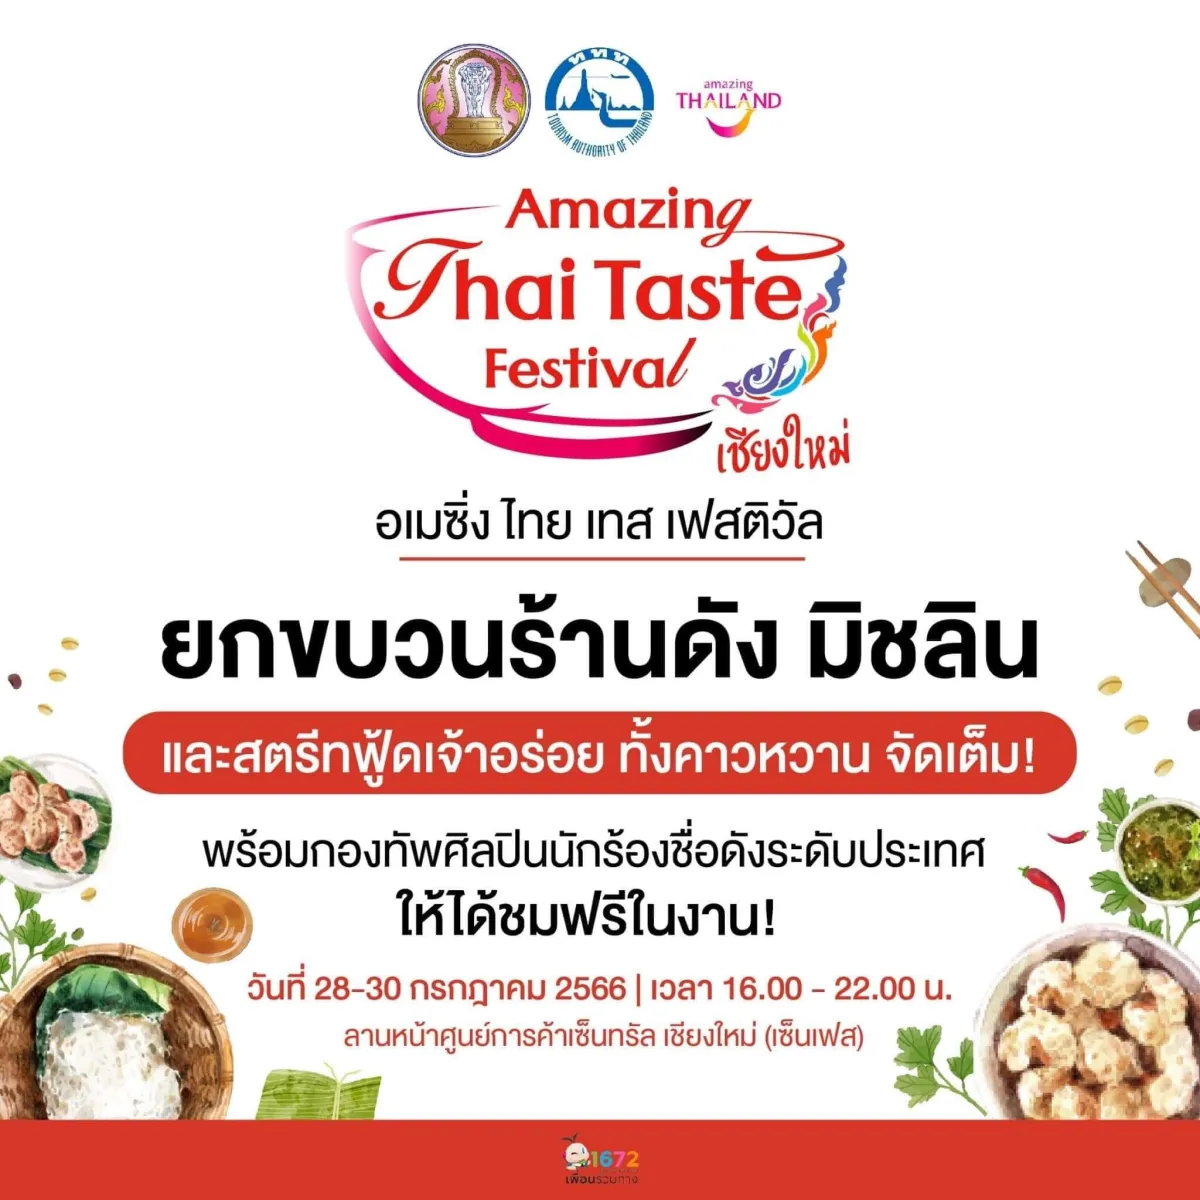 For Foodies: Amazing Thai Taste Festival